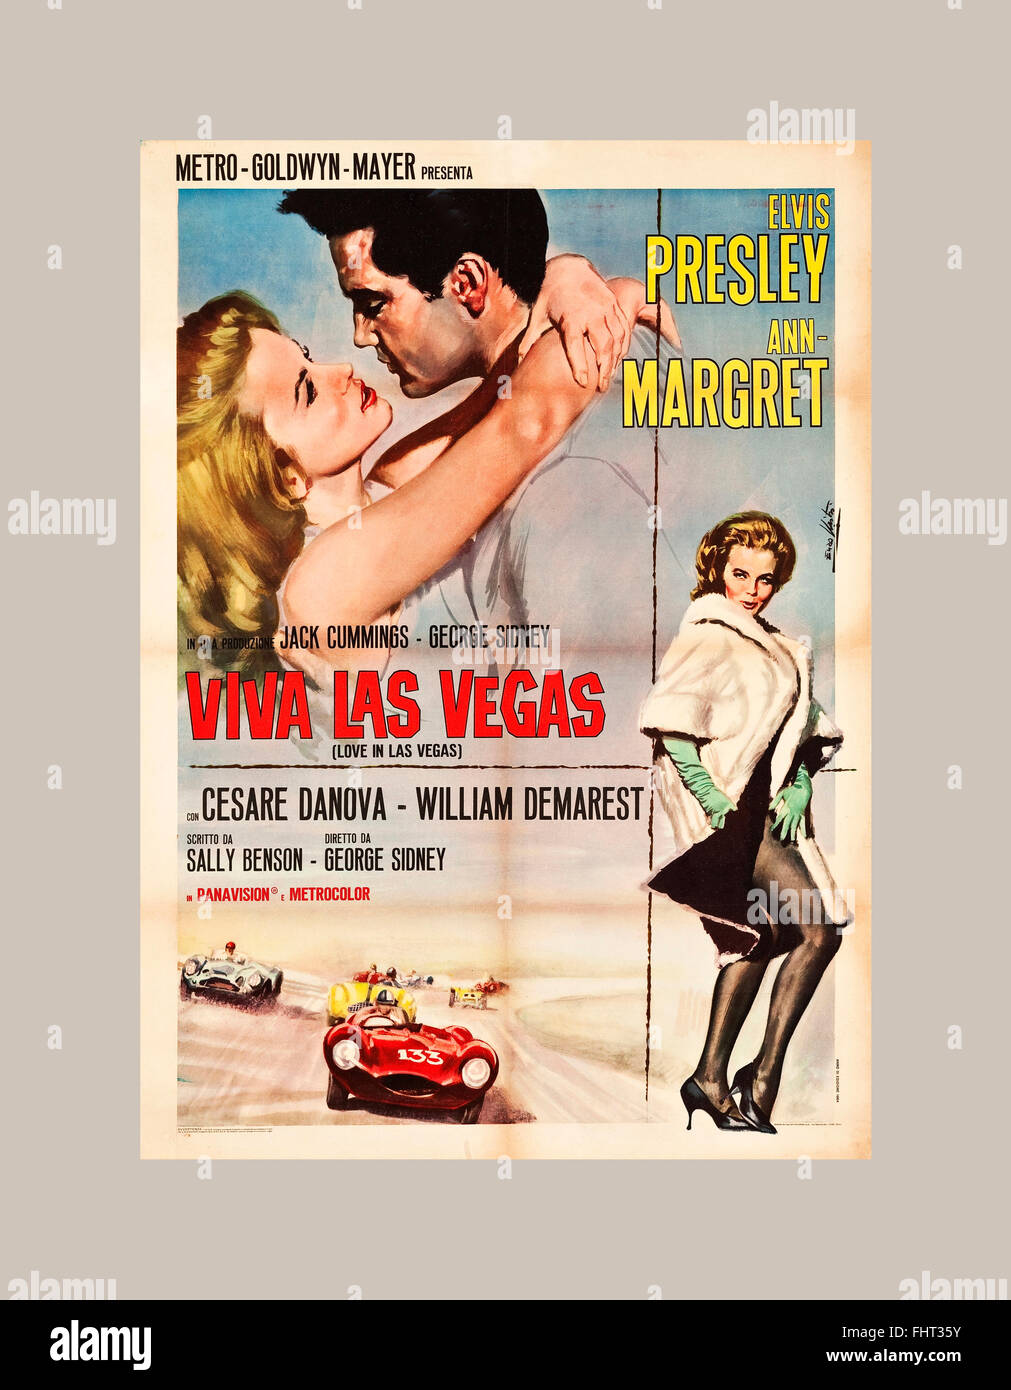 Póster de película protagonizada por Elvis Presley "Viva Las Vegas" con Ann Margret Mayo 20, (EE.UU Fotografía de stock -